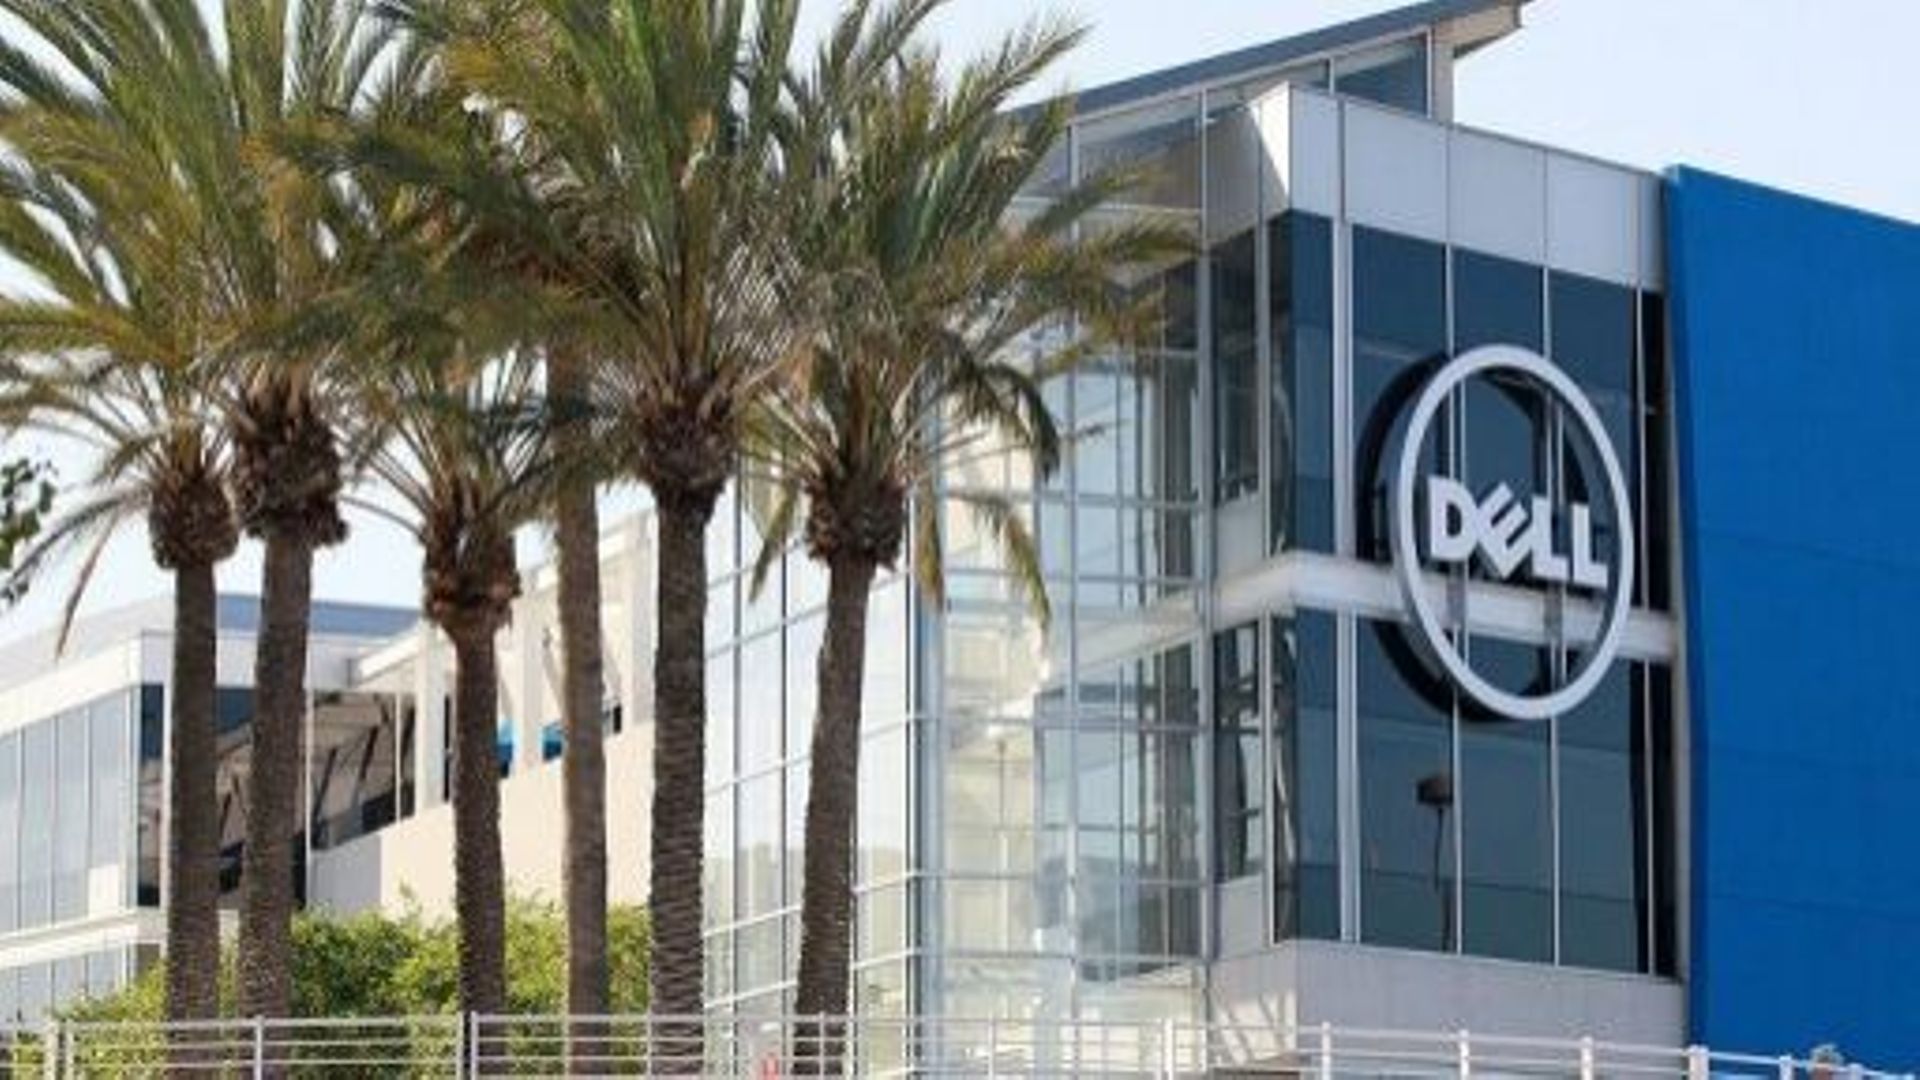 Le logo Dell sur un des bâtiments de l'entreprise à Santa Clara en Californie